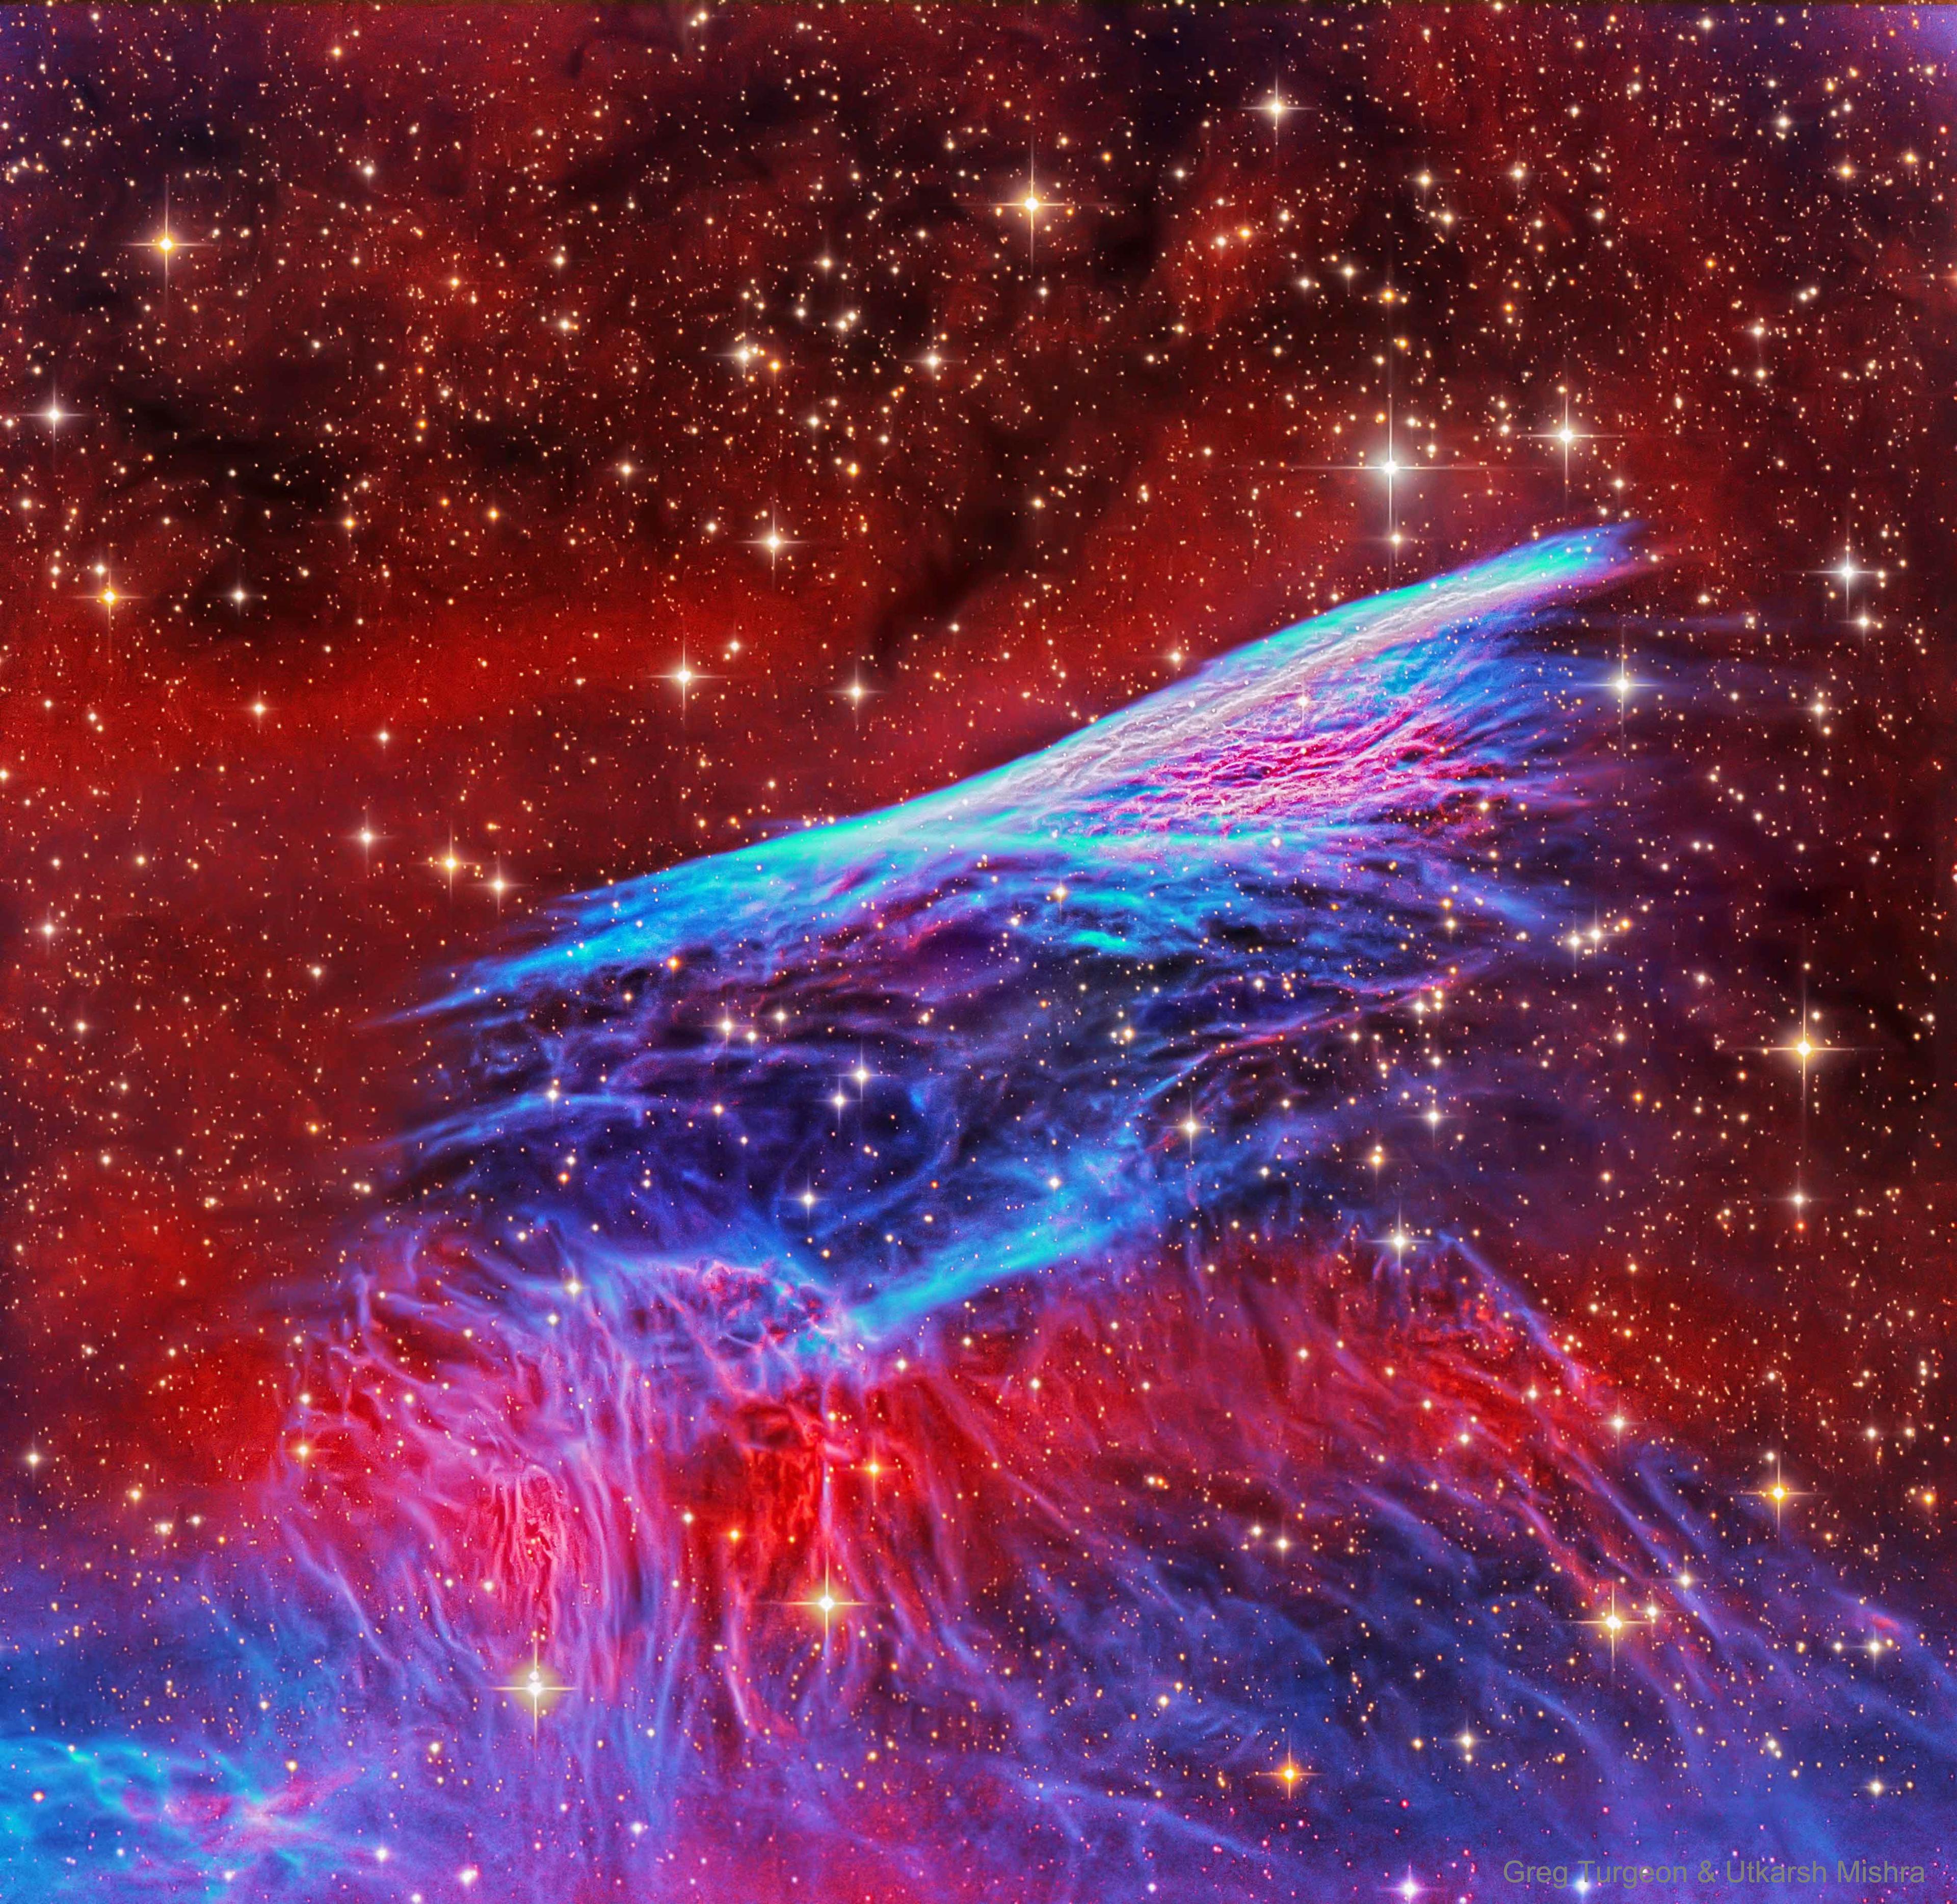 سديم بخيوط رفيعة ساطعة مجدولة متموّجة باللونين الأحمر والأزرق وما بينهما يظهر كاسطوانة شفافة في وسط الصورة وتحتها لهب، على خلفيّة كونيّة يسودها اللون الأحمر وتنتشر النجوم على امتداد الصورة.